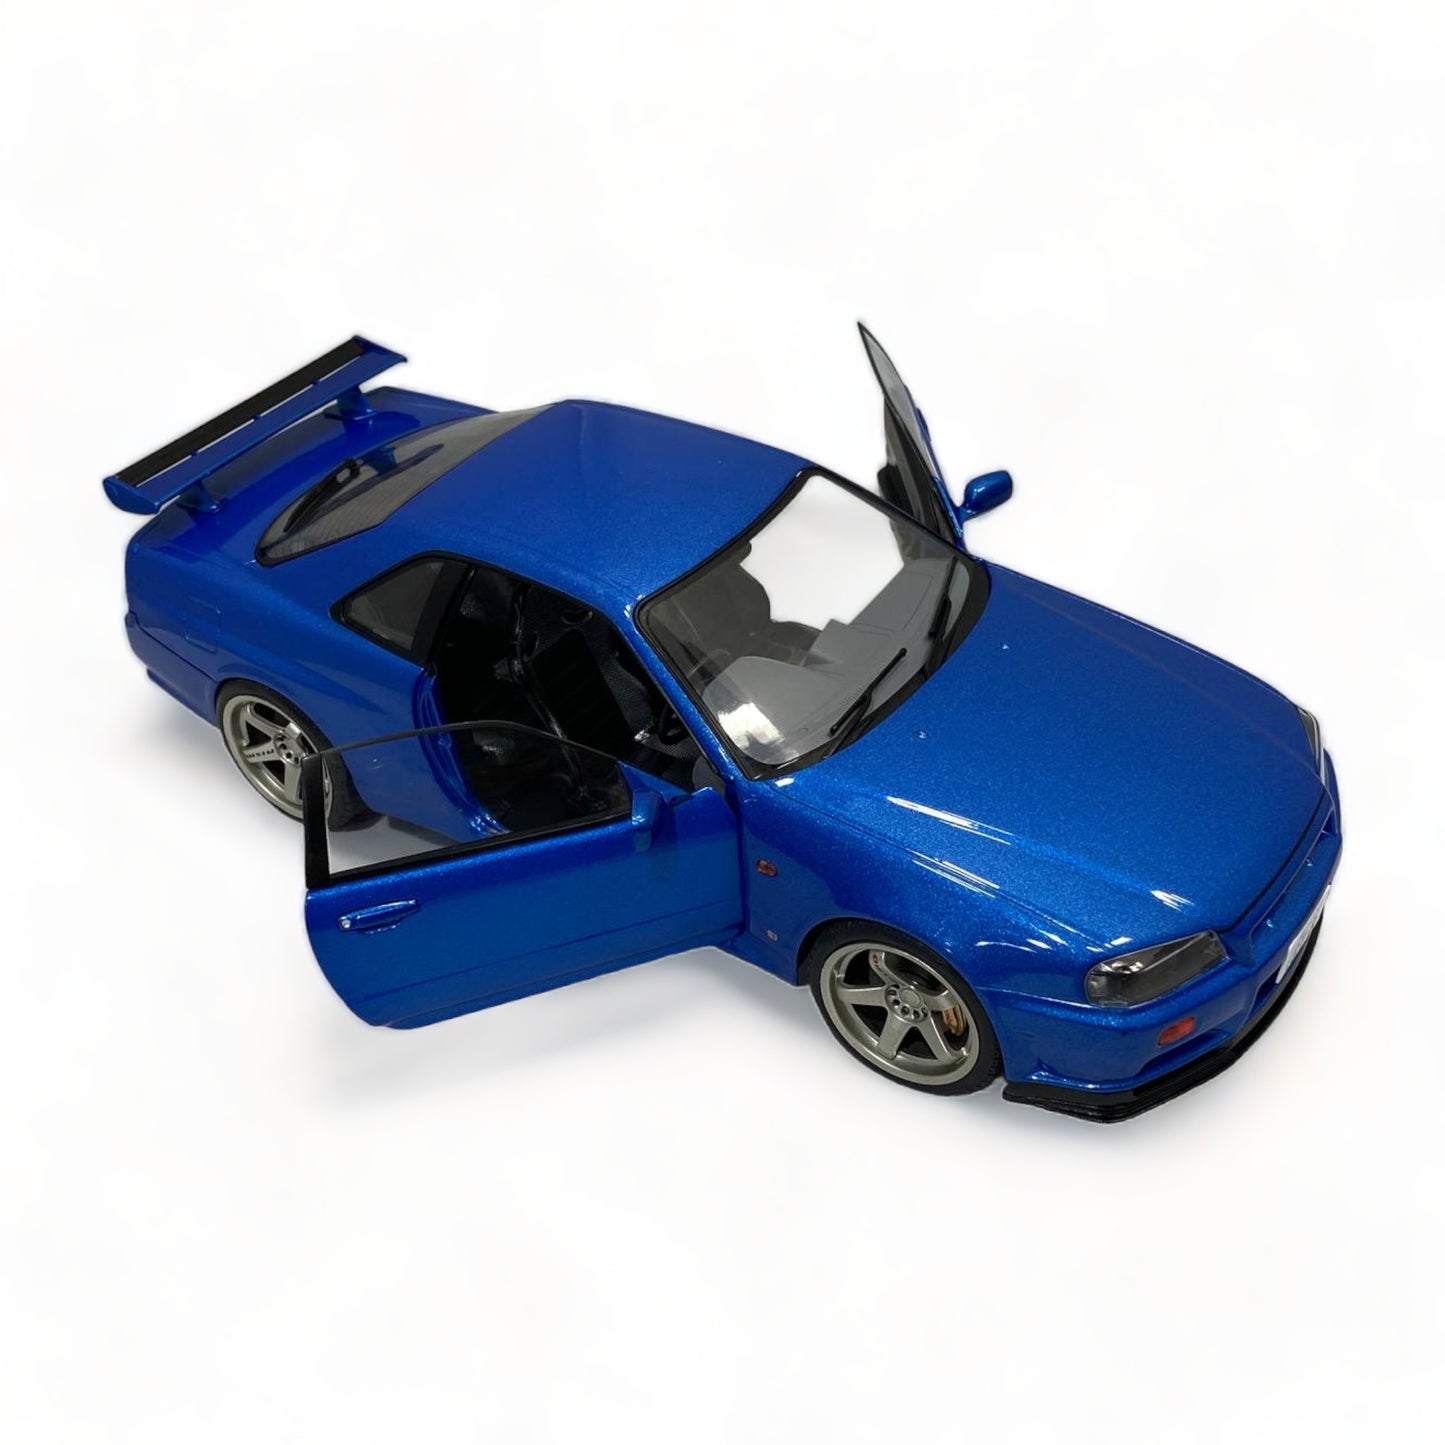 Diecast Nissan Skyline GT-R R34 Blue by Solido Scale Model Car|Sold in Dturman.com Dubai UAE.